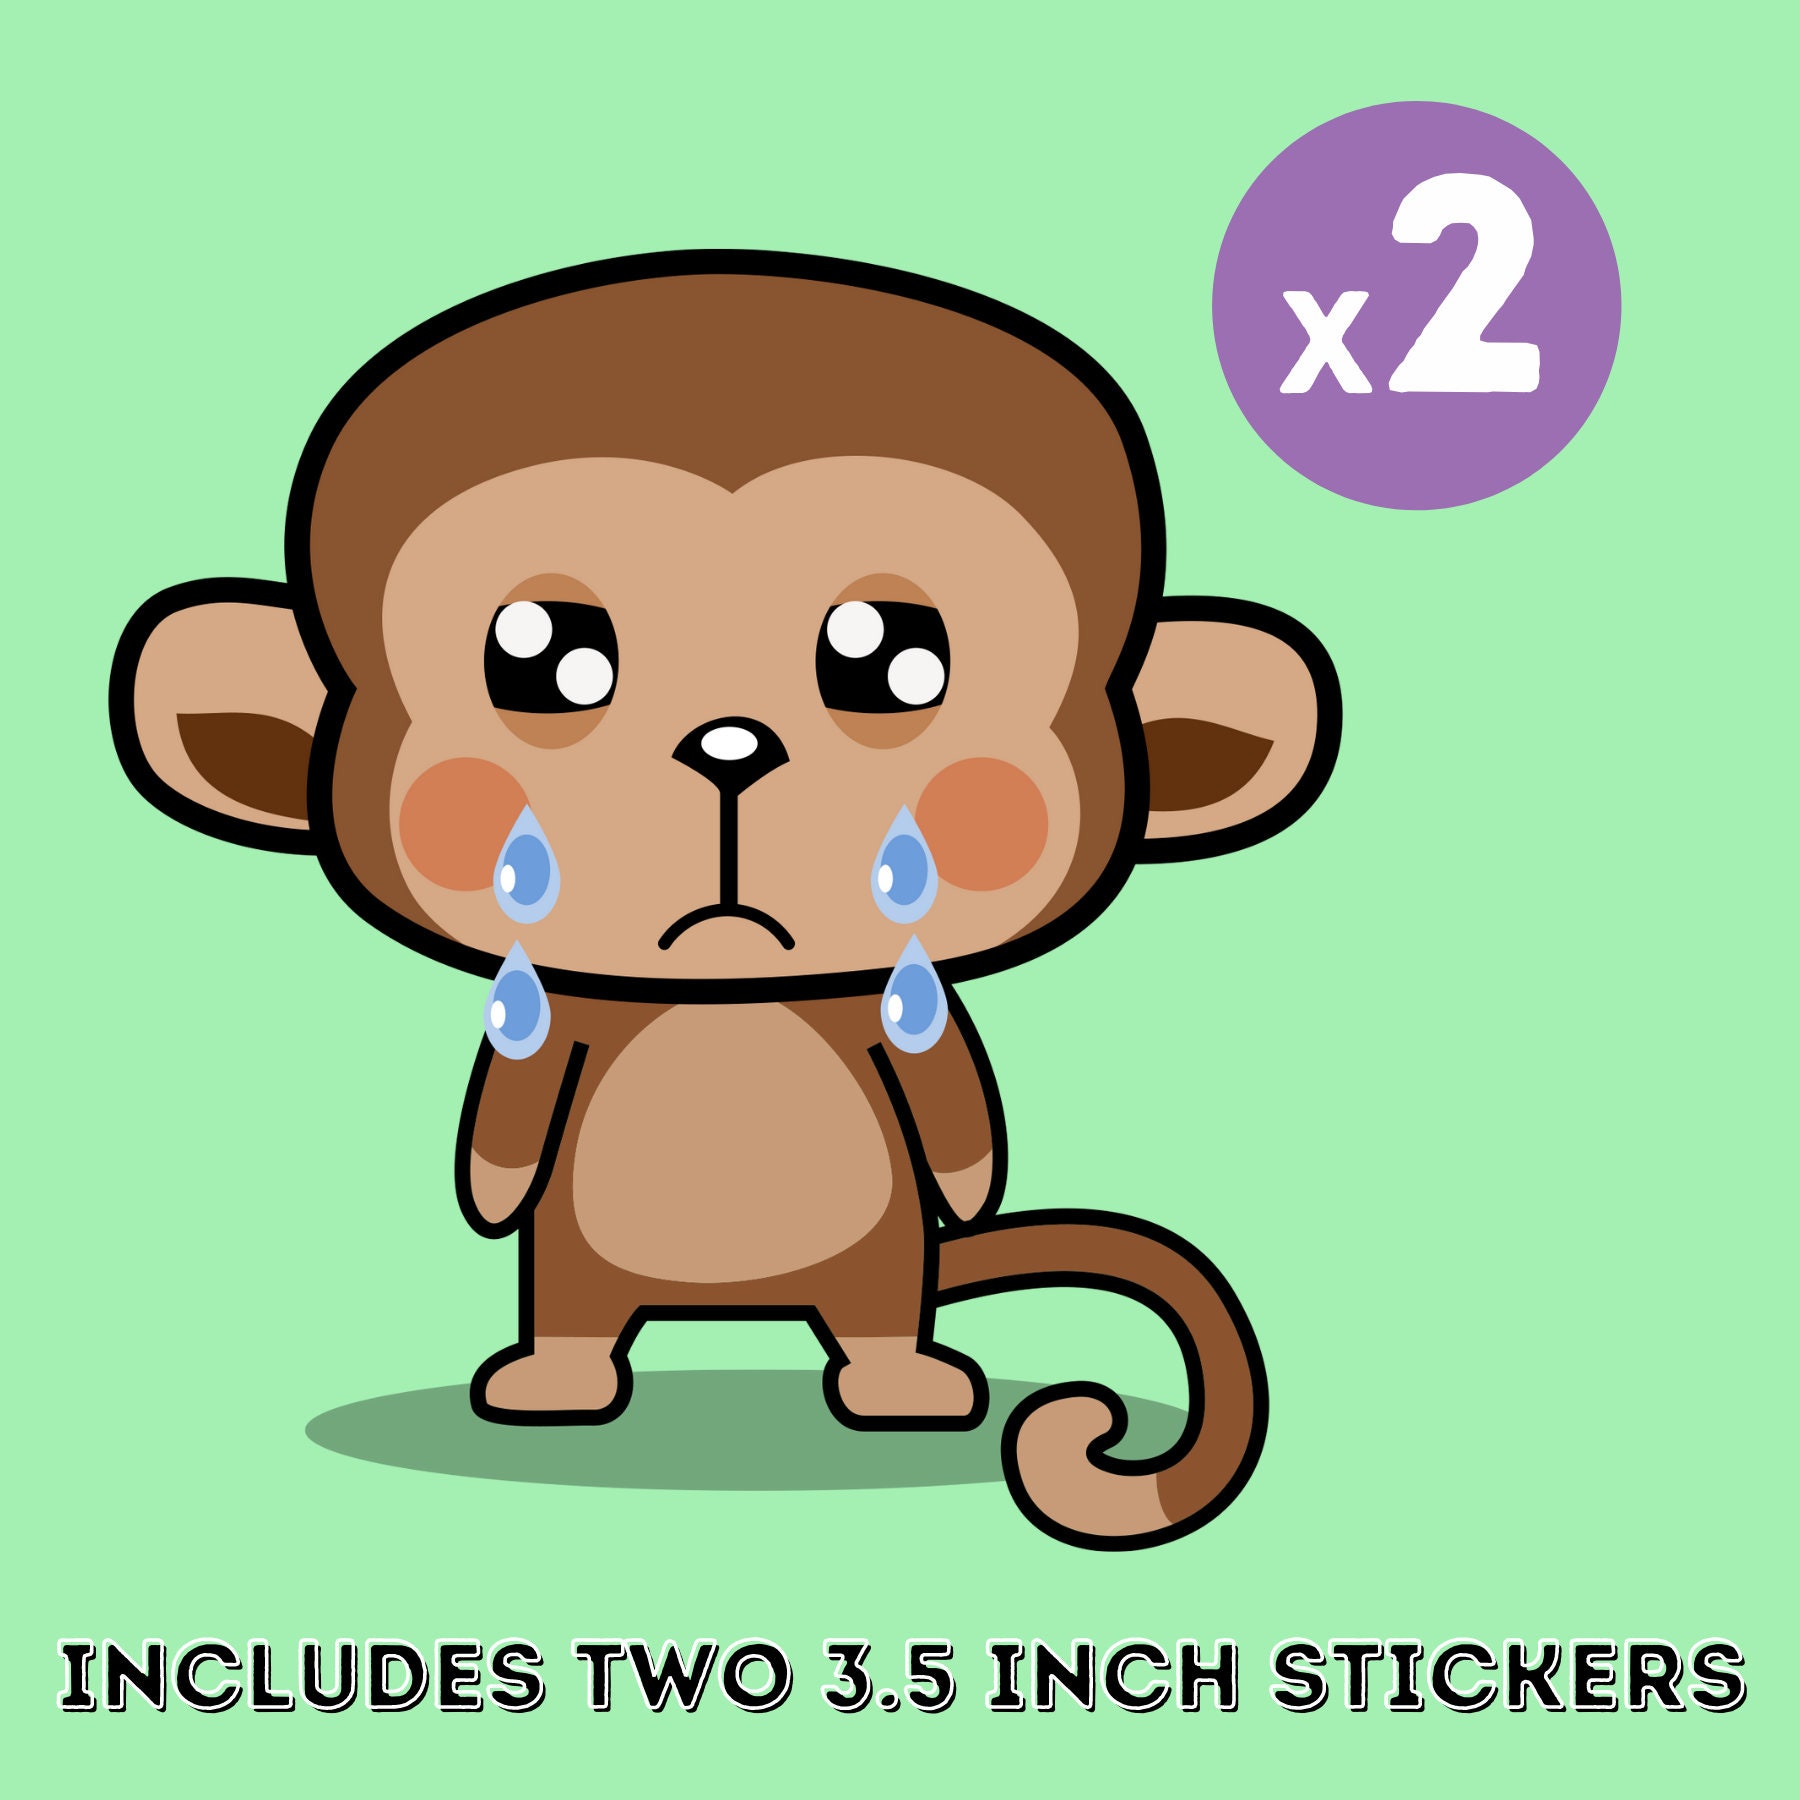 Sad Crying Monkey Sticker 2-pack Kawaii Chimp Upset Japanese - Etsy